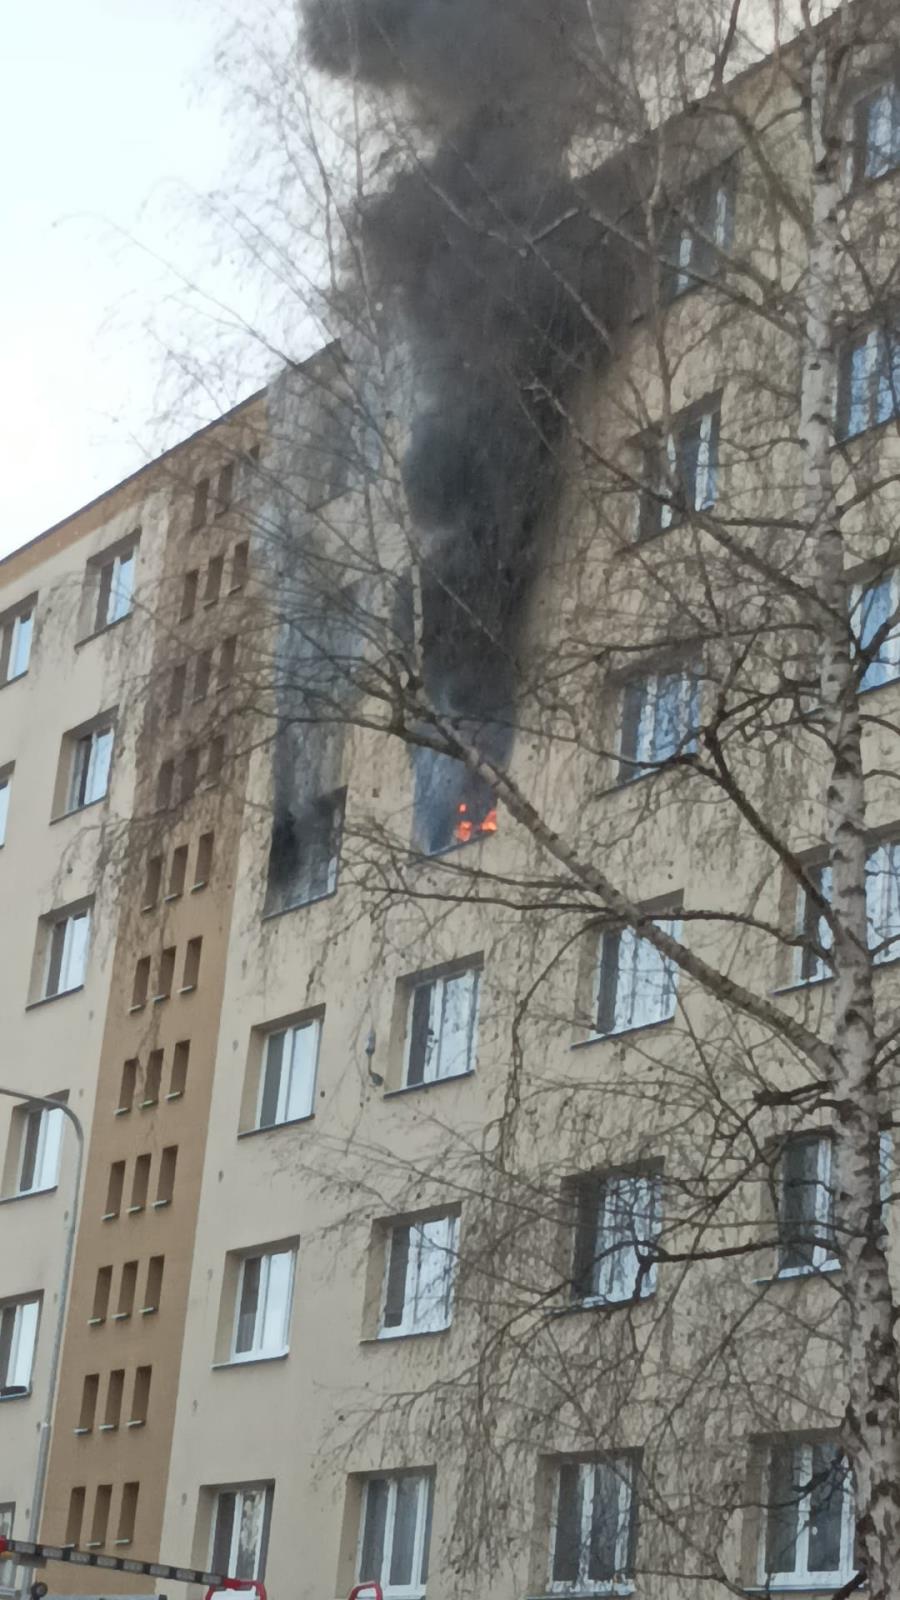 001 - požár v bytu v panelovém domě.jpg